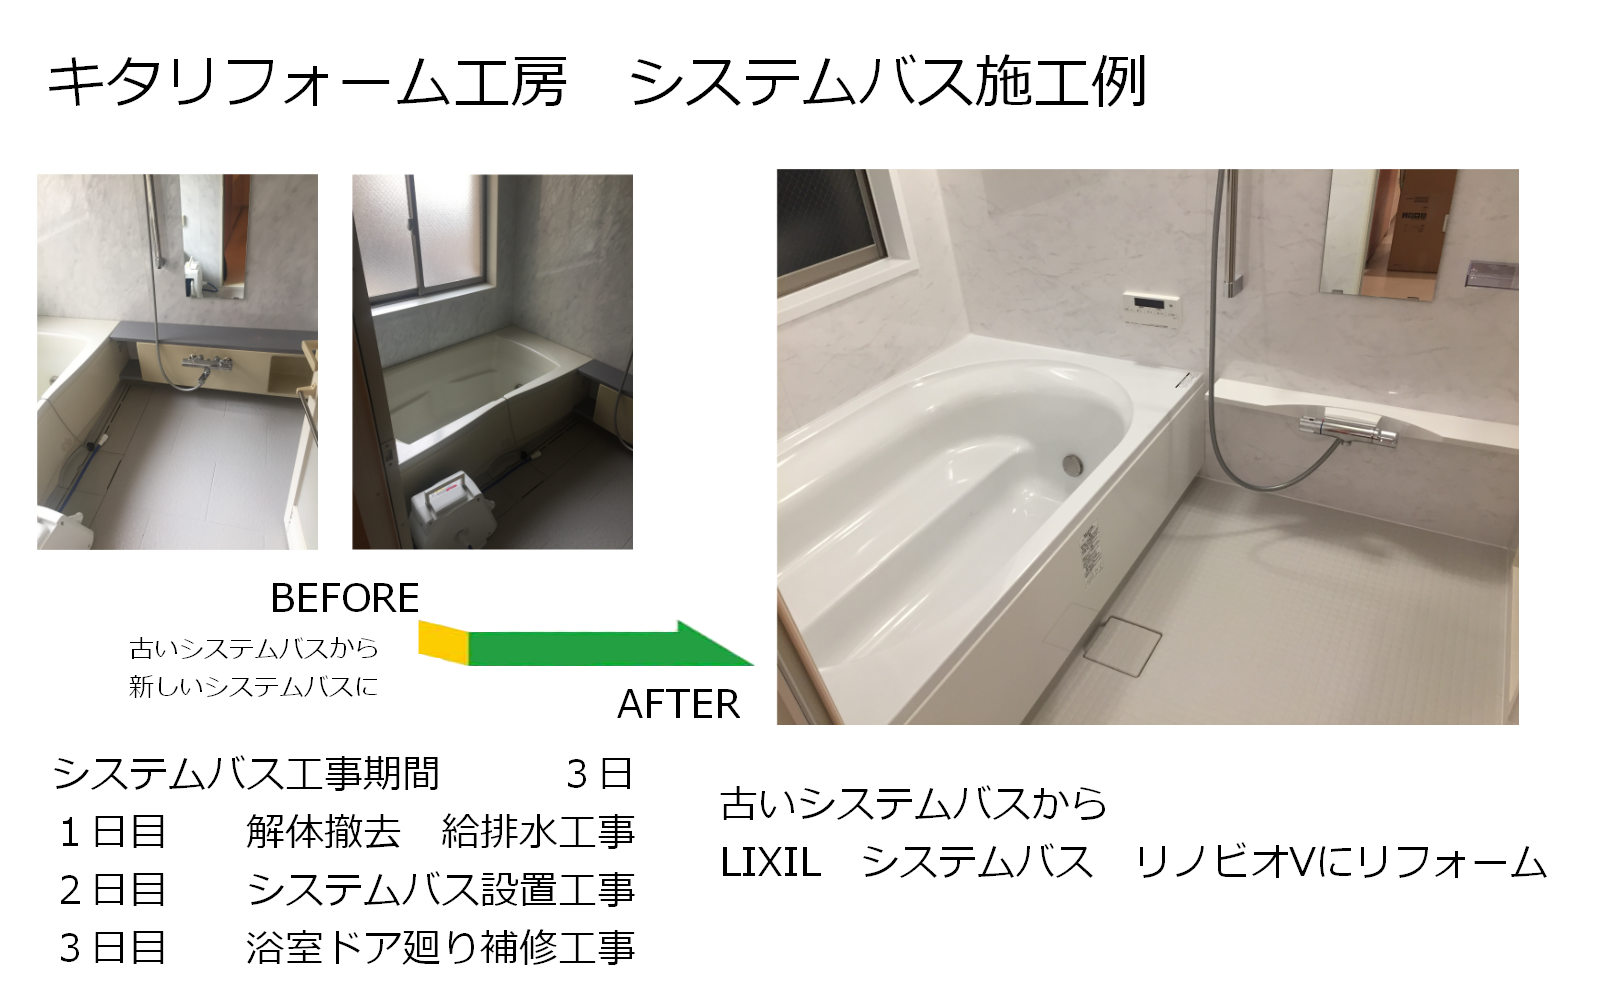 東大阪　ユニットバス　在来工法の風呂・浴室のうち、浴槽だけを交換する場合の費用目安です。  浴槽はベーシックなFRP製（ガラス繊維強化プラスチック）のもので16万円、工事は取り外し・取り付け・下地の補修を行い、費用は14万円でした。浴槽に使われる素材は、FRPの他にも、滑らかな肌触りが特長のホーロー、耐久性と保温性が良く根強い人気があるステンレス、独特の香りや温かみに癒される木材などがあり、価格も10万円を切るものから数十万円以上のものまでさまざまです。取り替えユニットバスの中心価格帯は50～100万円、